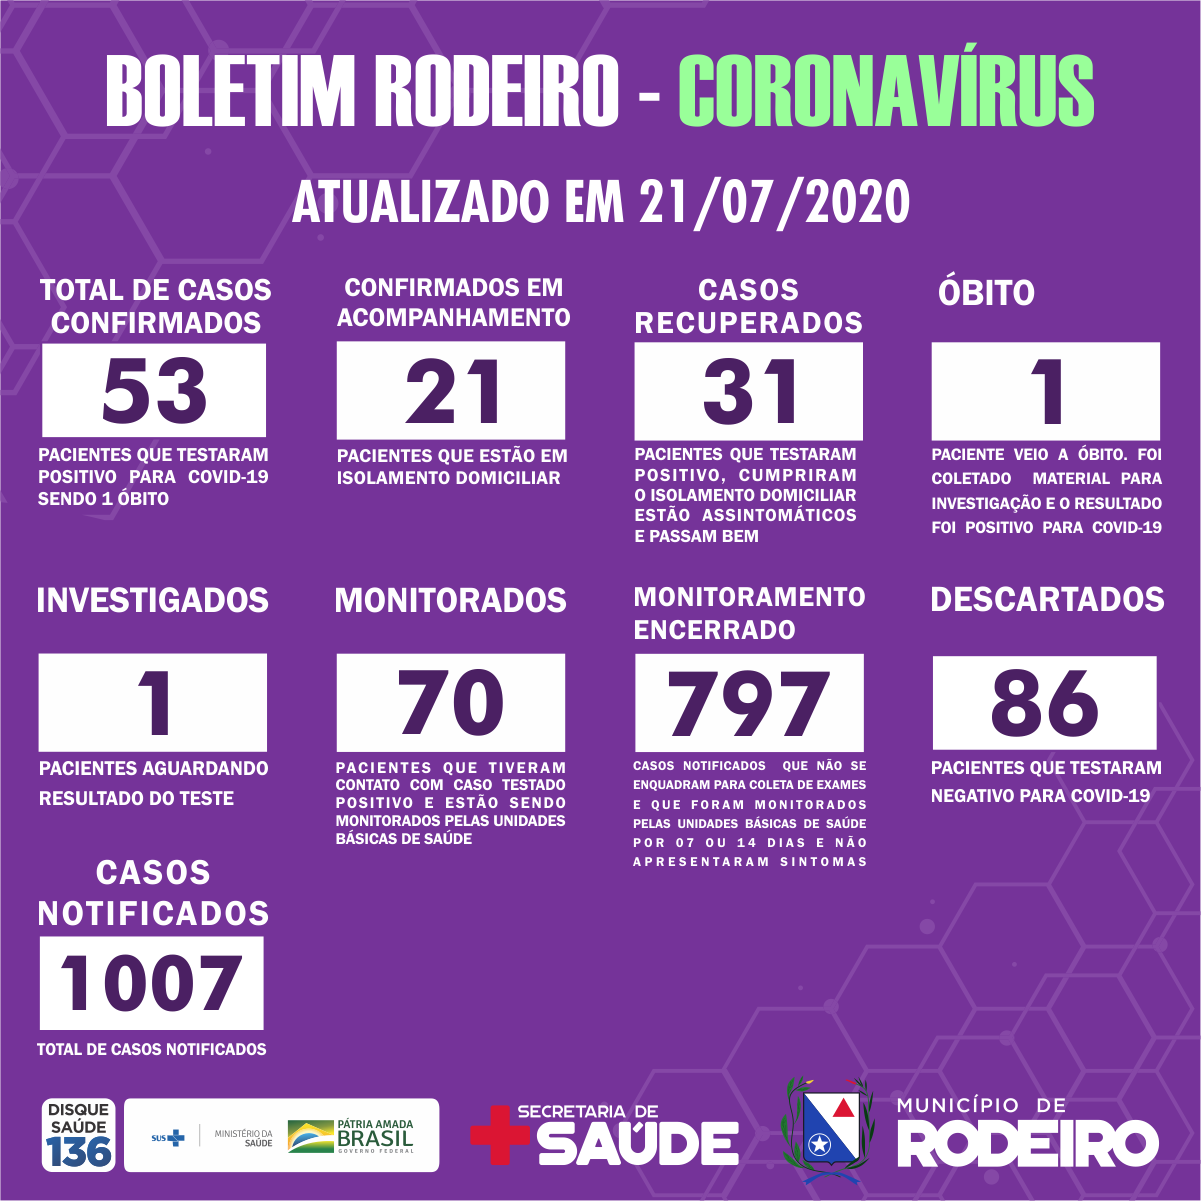 Boletim epidemiológico do Município de Rodeiro coronavírus, atualizado em 21/07/2020